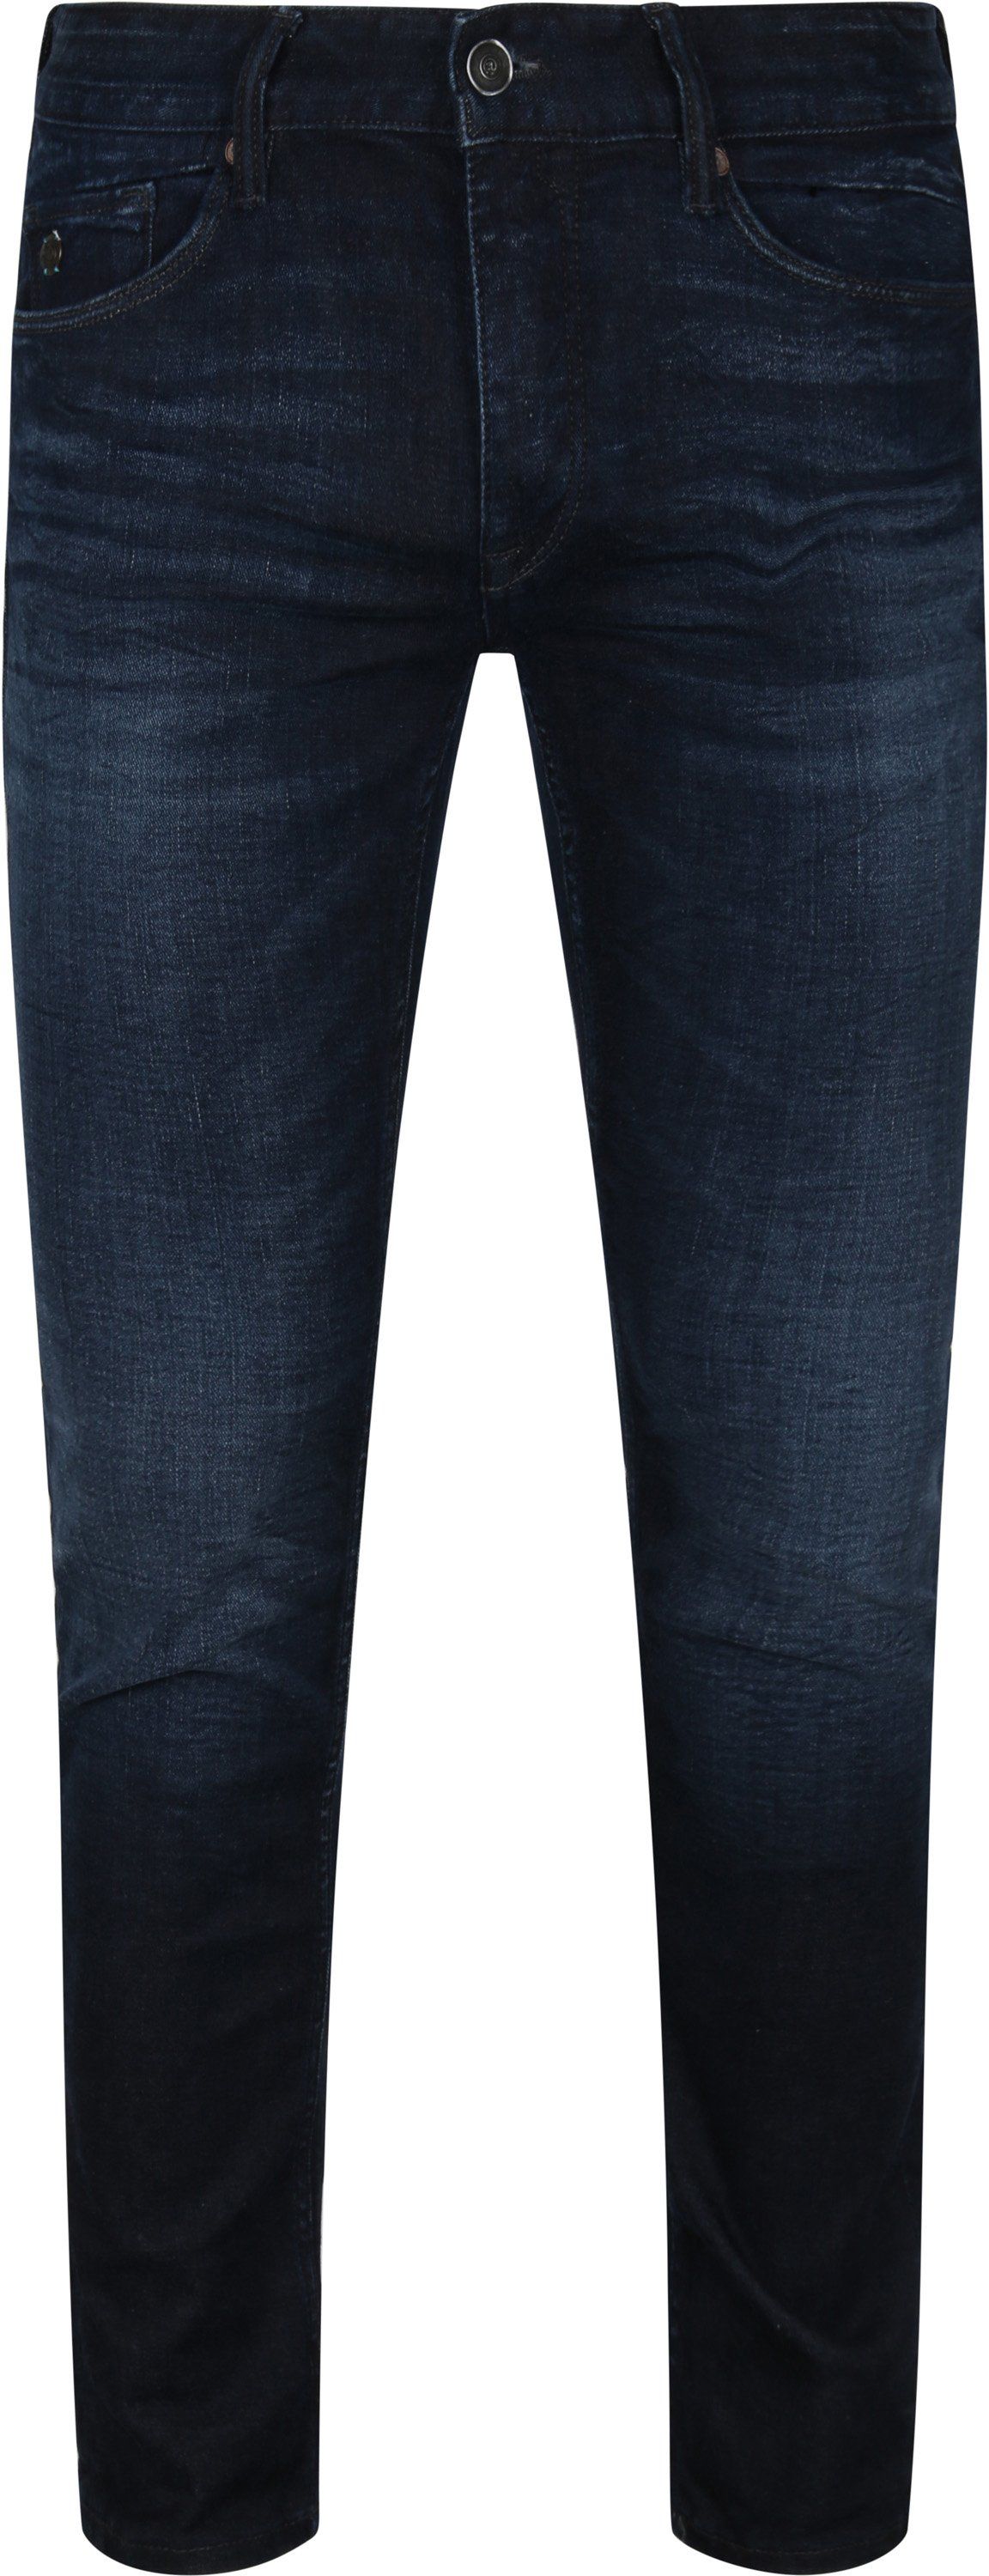 Cast Iron Riser Jeans Dark Blue Dark Blue size W 30